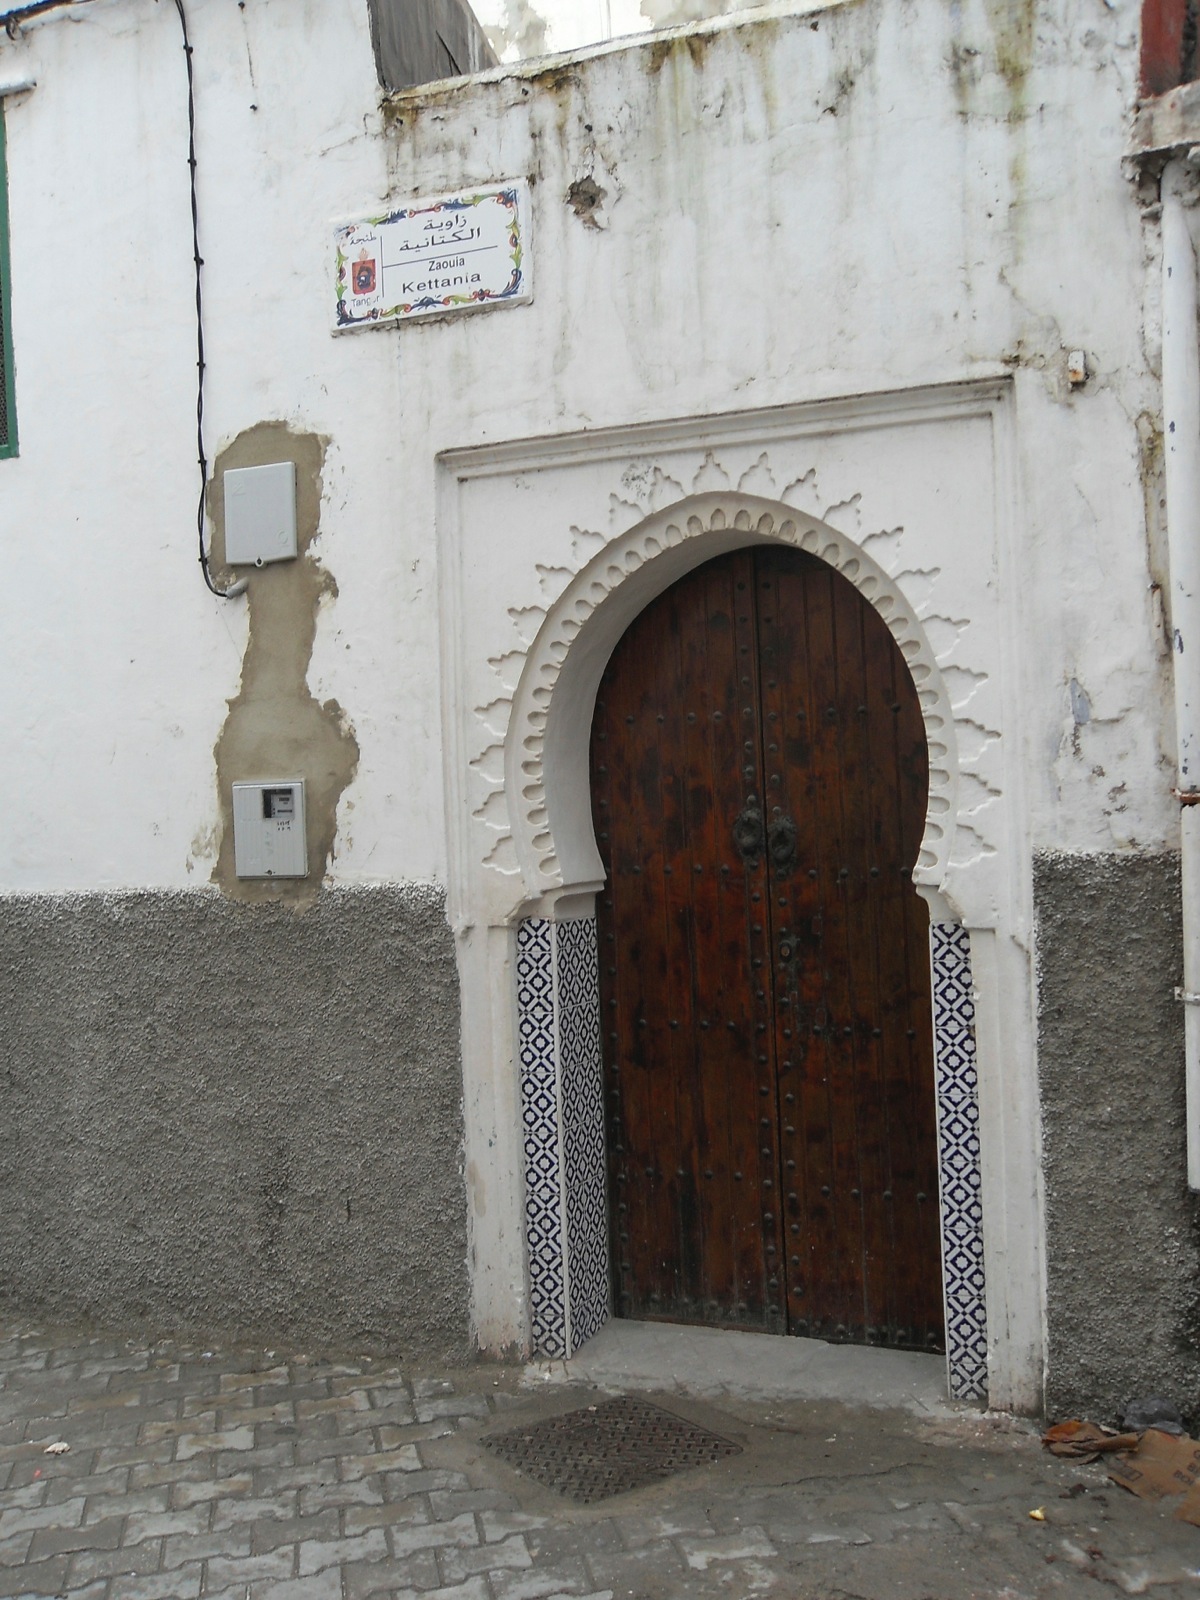 Entrance to Zawiya Kettania